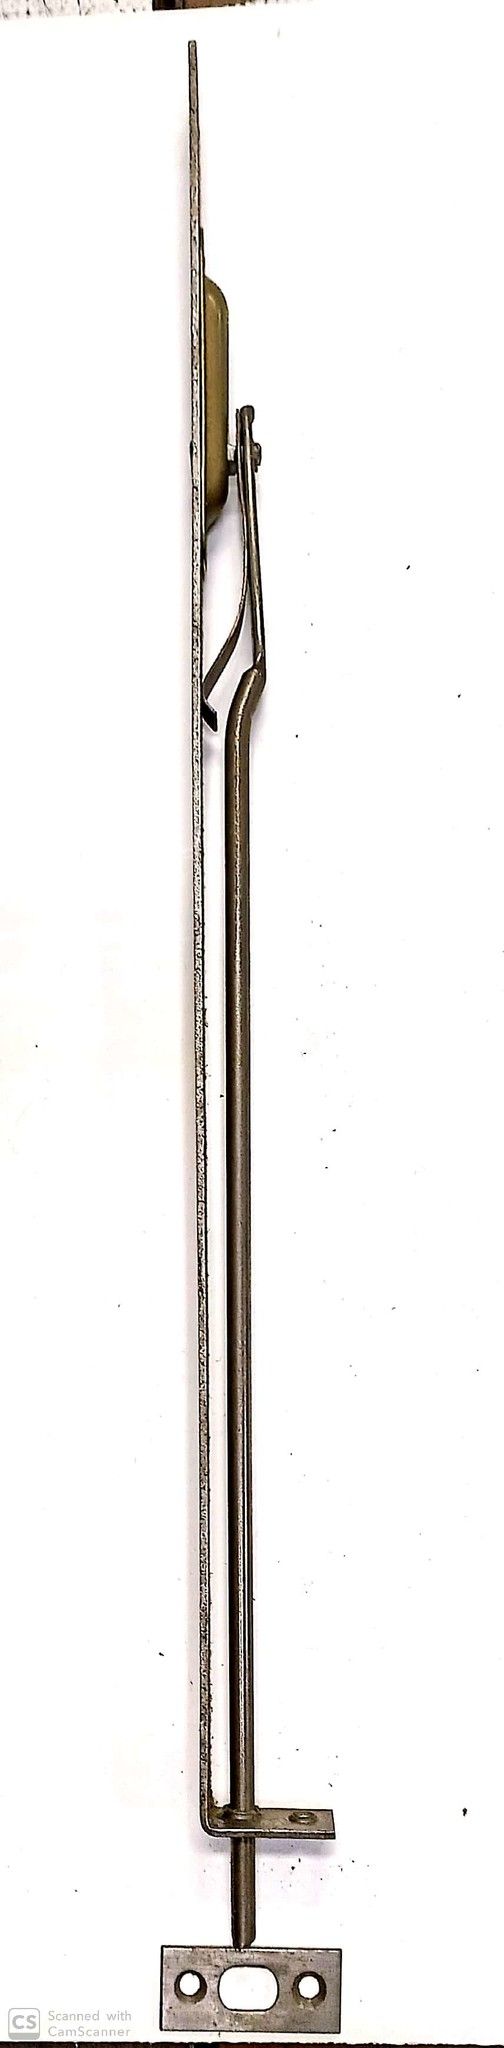 Catenaccio ad unghia cm 35 frontale mm 18 in ferro grezzo serie media